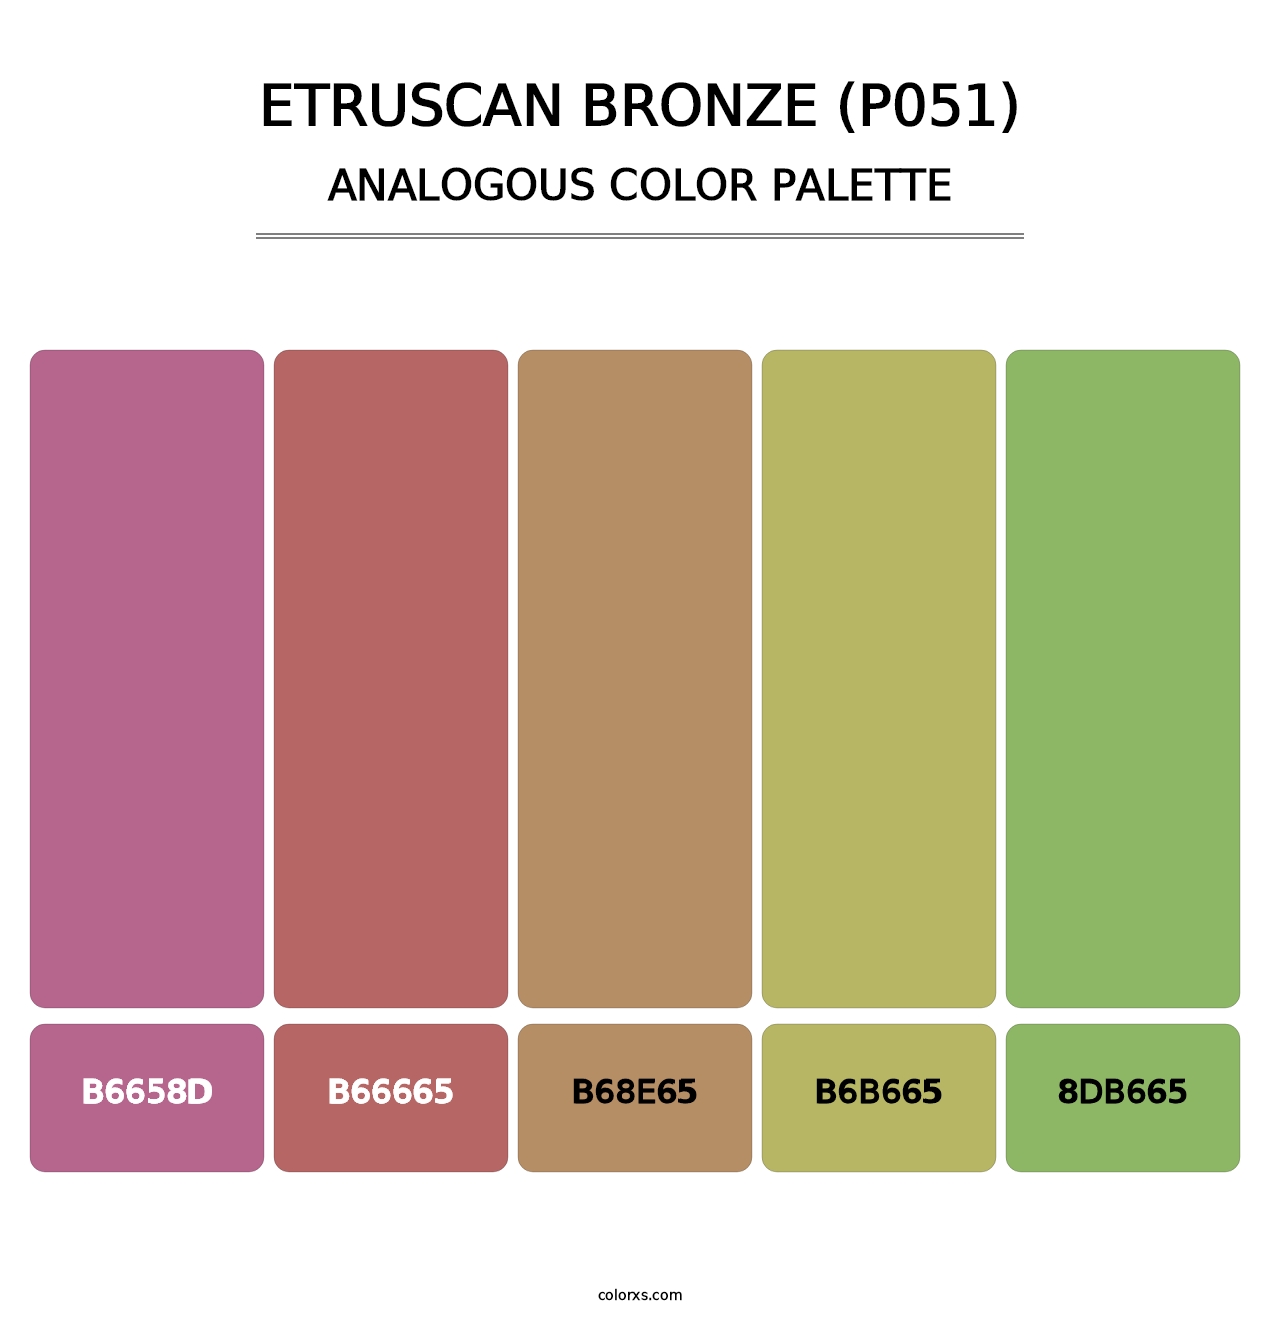 Etruscan Bronze (P051) - Analogous Color Palette